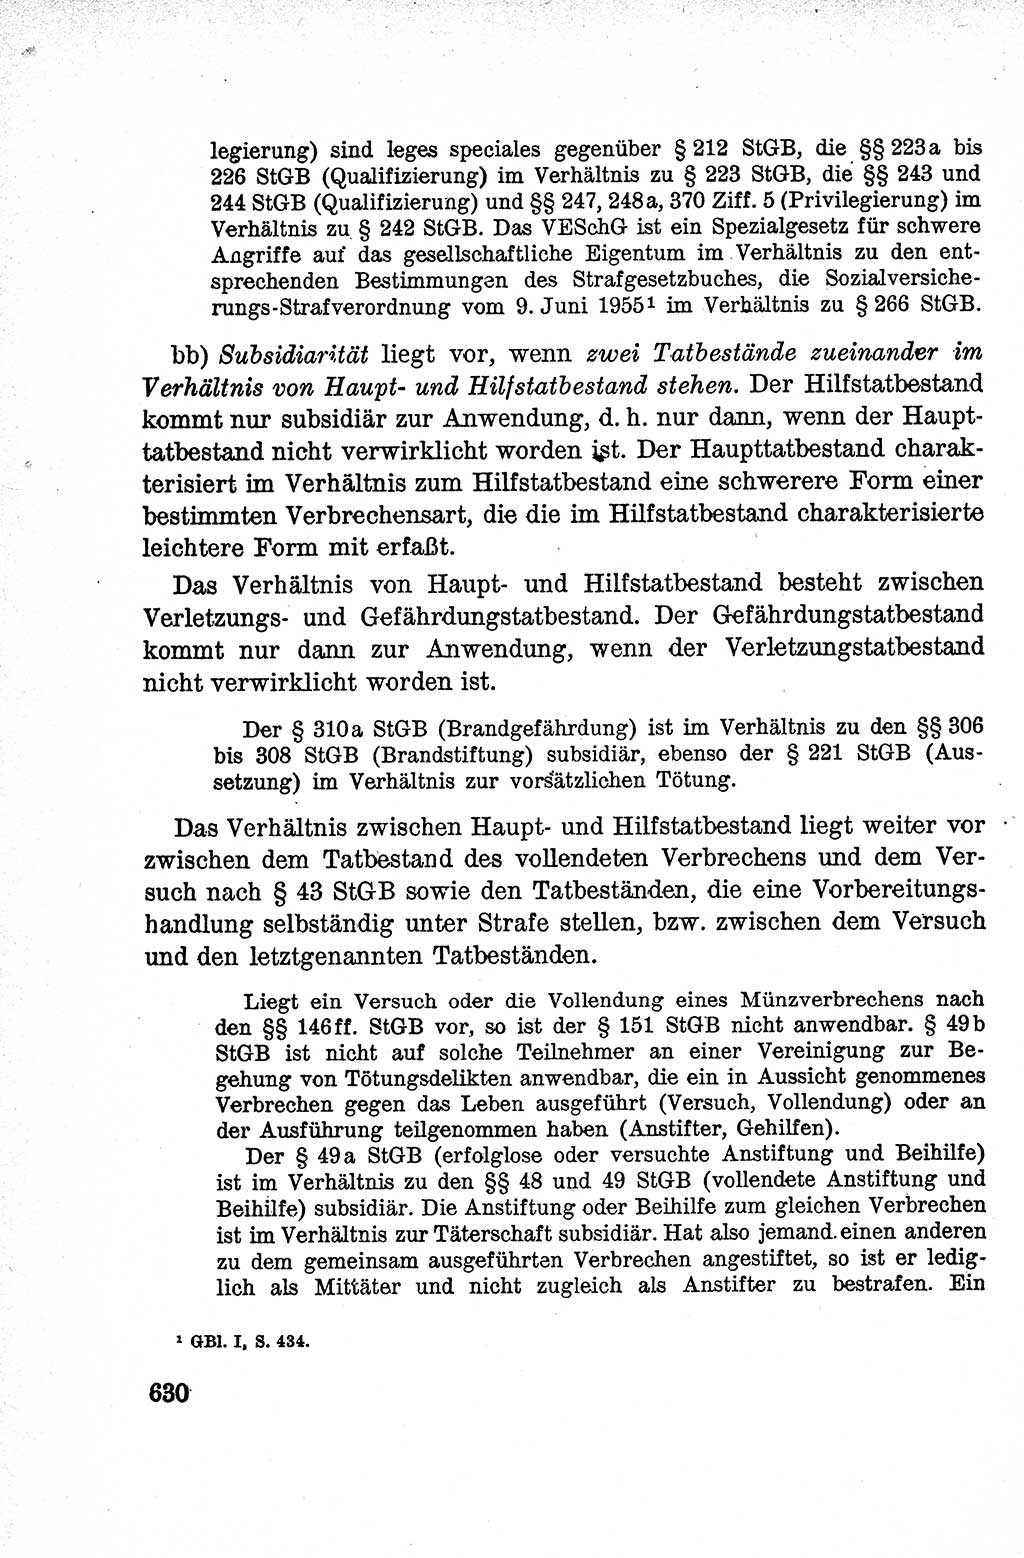 Lehrbuch des Strafrechts der Deutschen Demokratischen Republik (DDR), Allgemeiner Teil 1959, Seite 630 (Lb. Strafr. DDR AT 1959, S. 630)